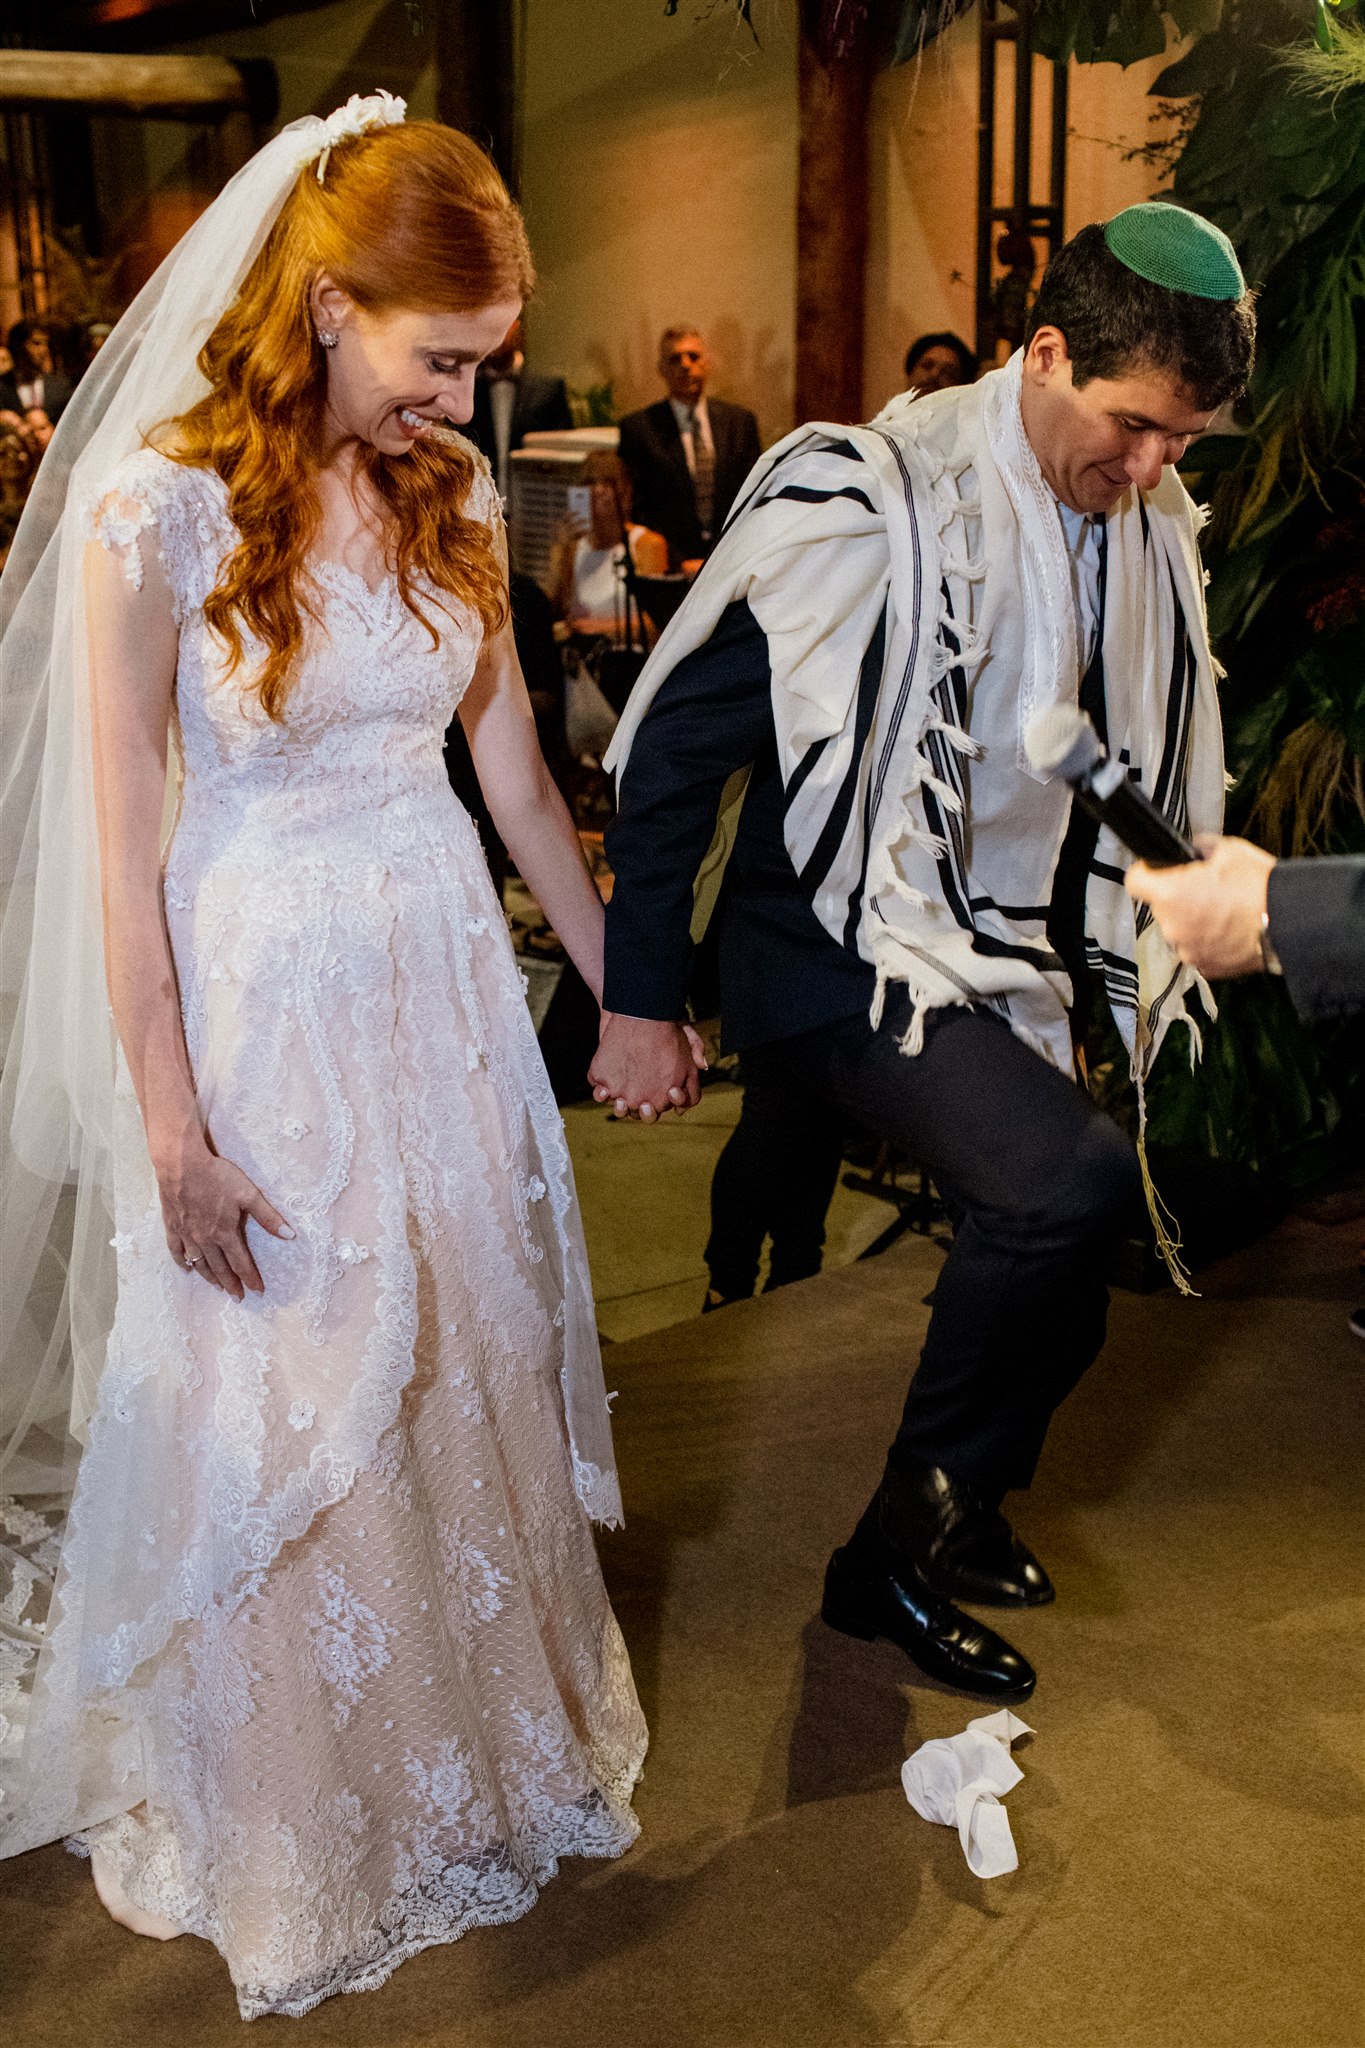 Casamento judaico em agradável noite de São Paulo &#8211; Sonia &#038; Daniel